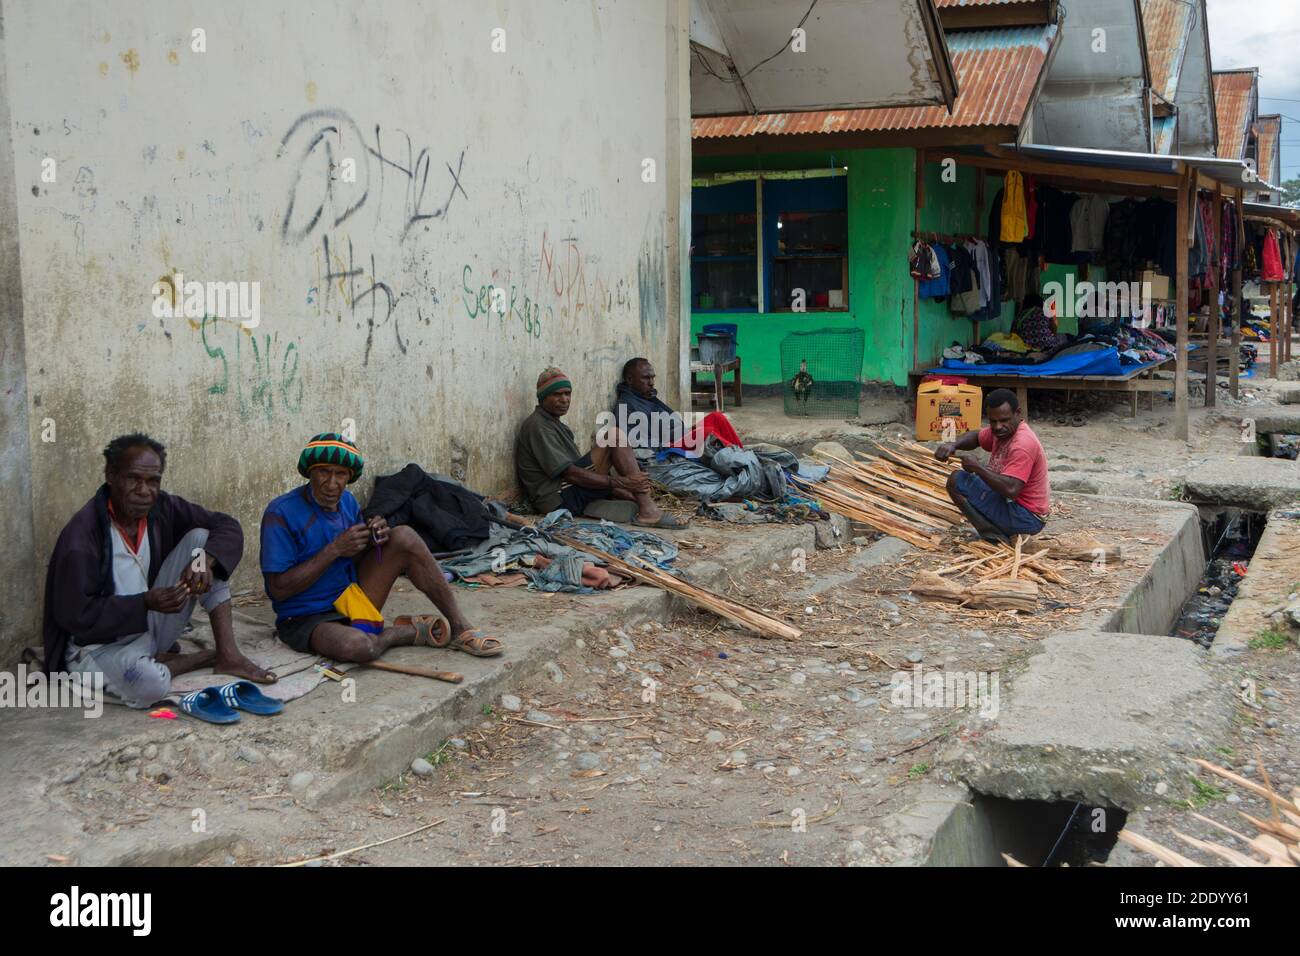 Marché d'un grand marché à la périphérie de Wamena, Papouasie occidentale, Indonésie. Hommes assis contre le mur en attente d'un travail. Banque D'Images